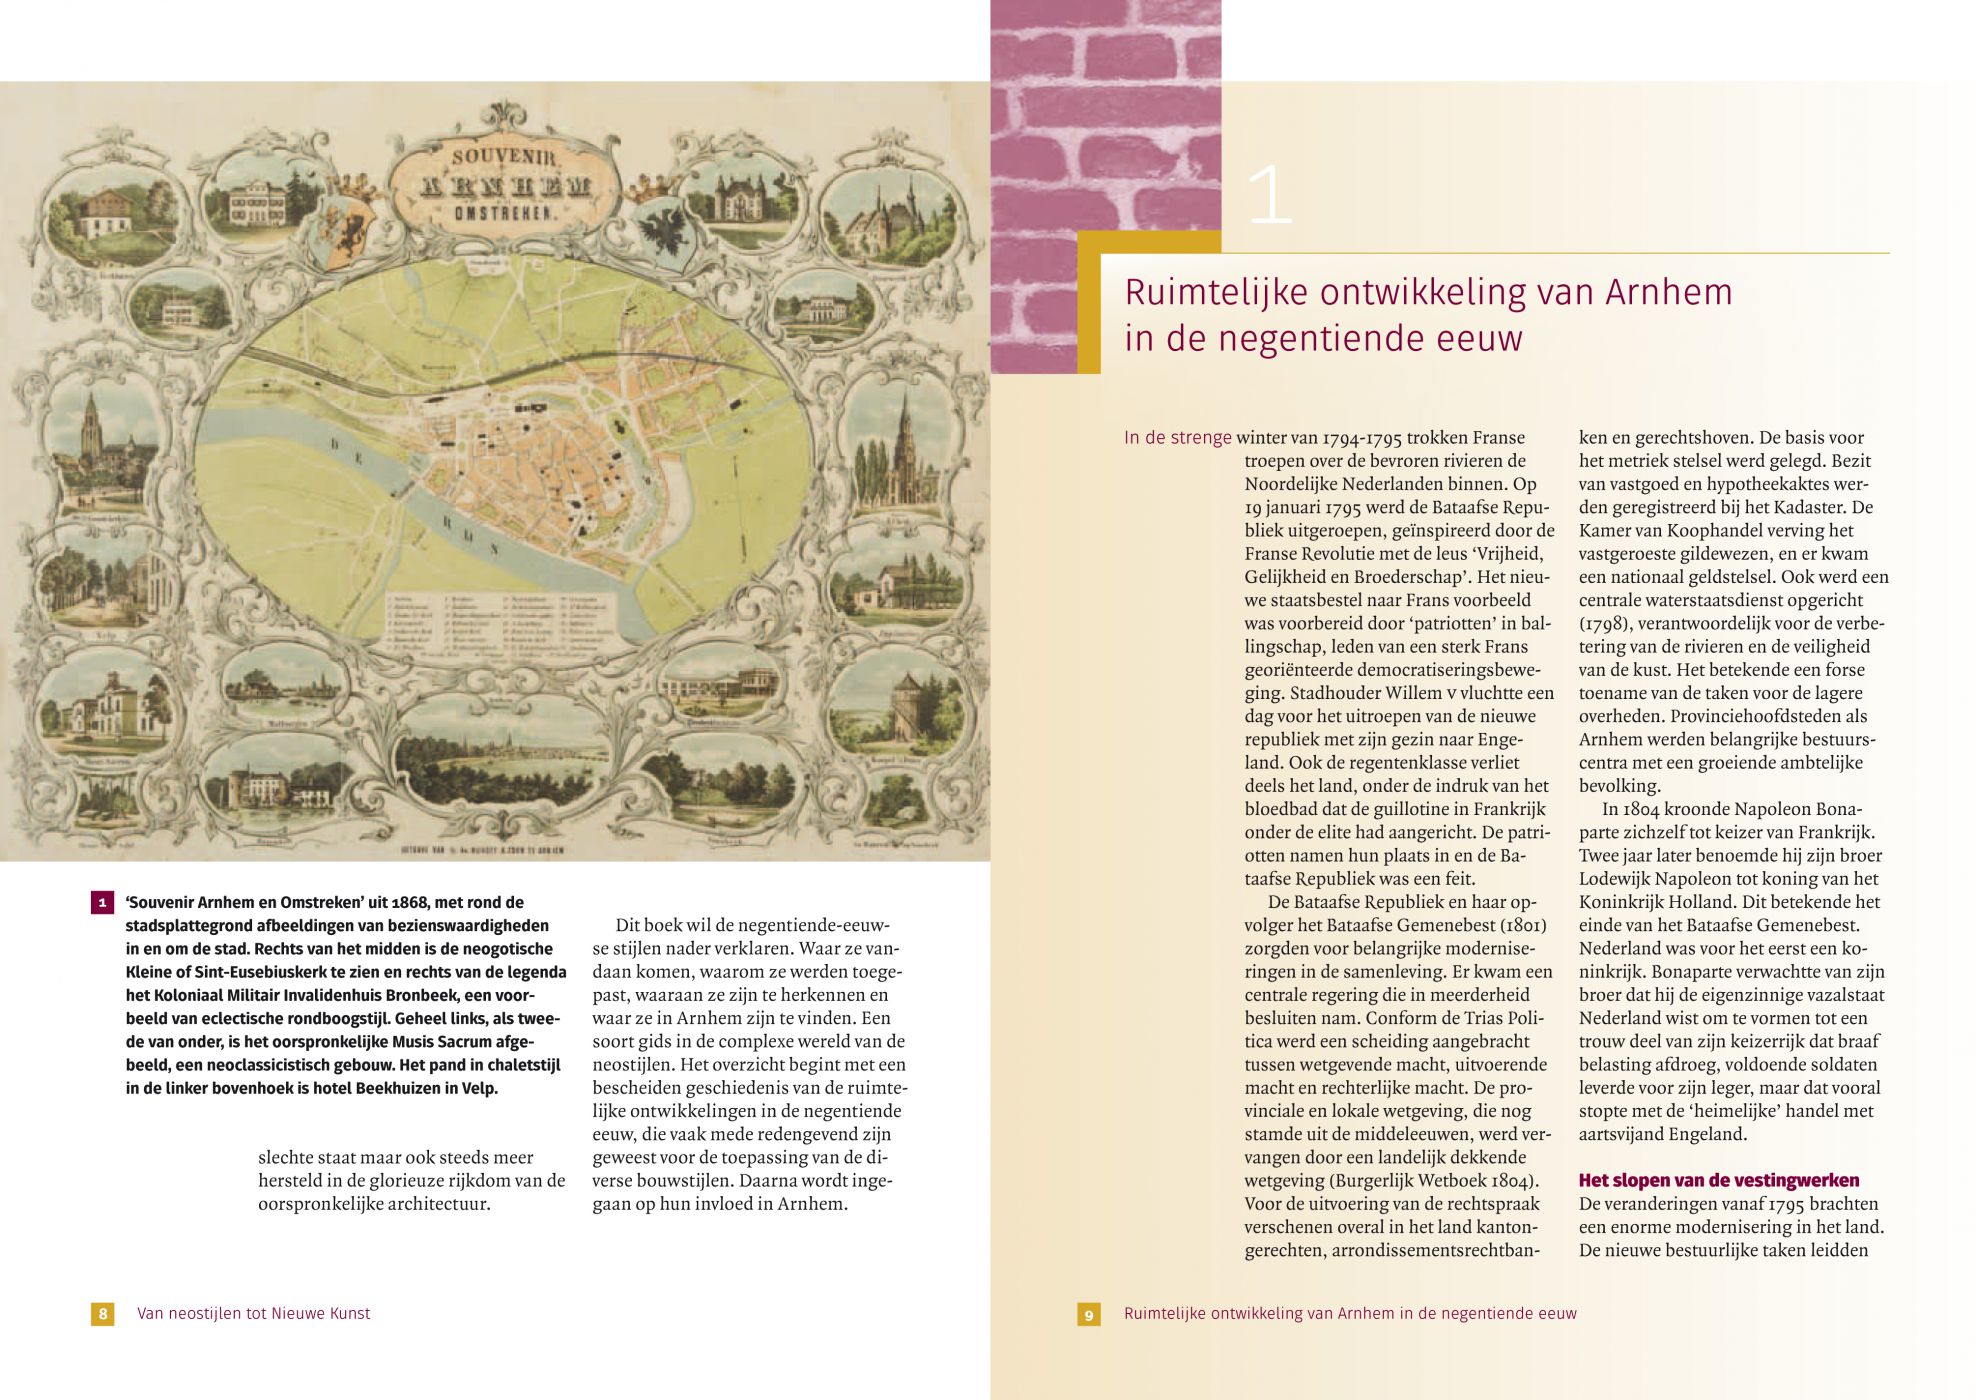 Inkijkexemplaar van het boek: <em>Van neostijlen tot Nieuwe Kunst. Arnhemse architectuur uit de negentiende eeuw</em> - © Uitgeverij Matrijs